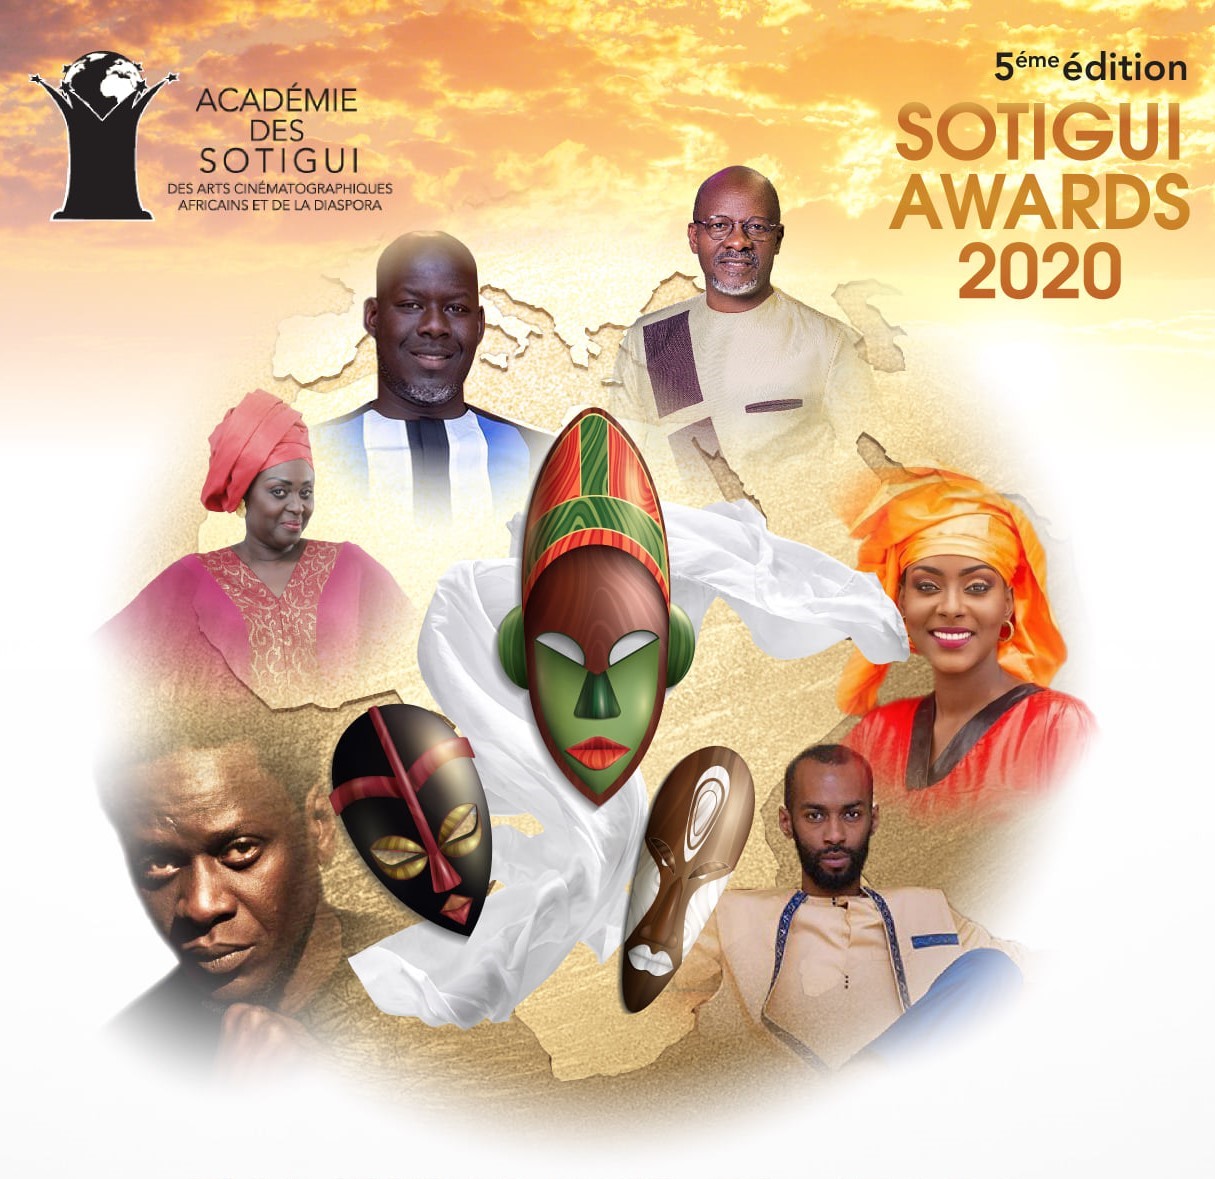 Les acteurs sénégalais aux SOTIGUI AWARDS 2020